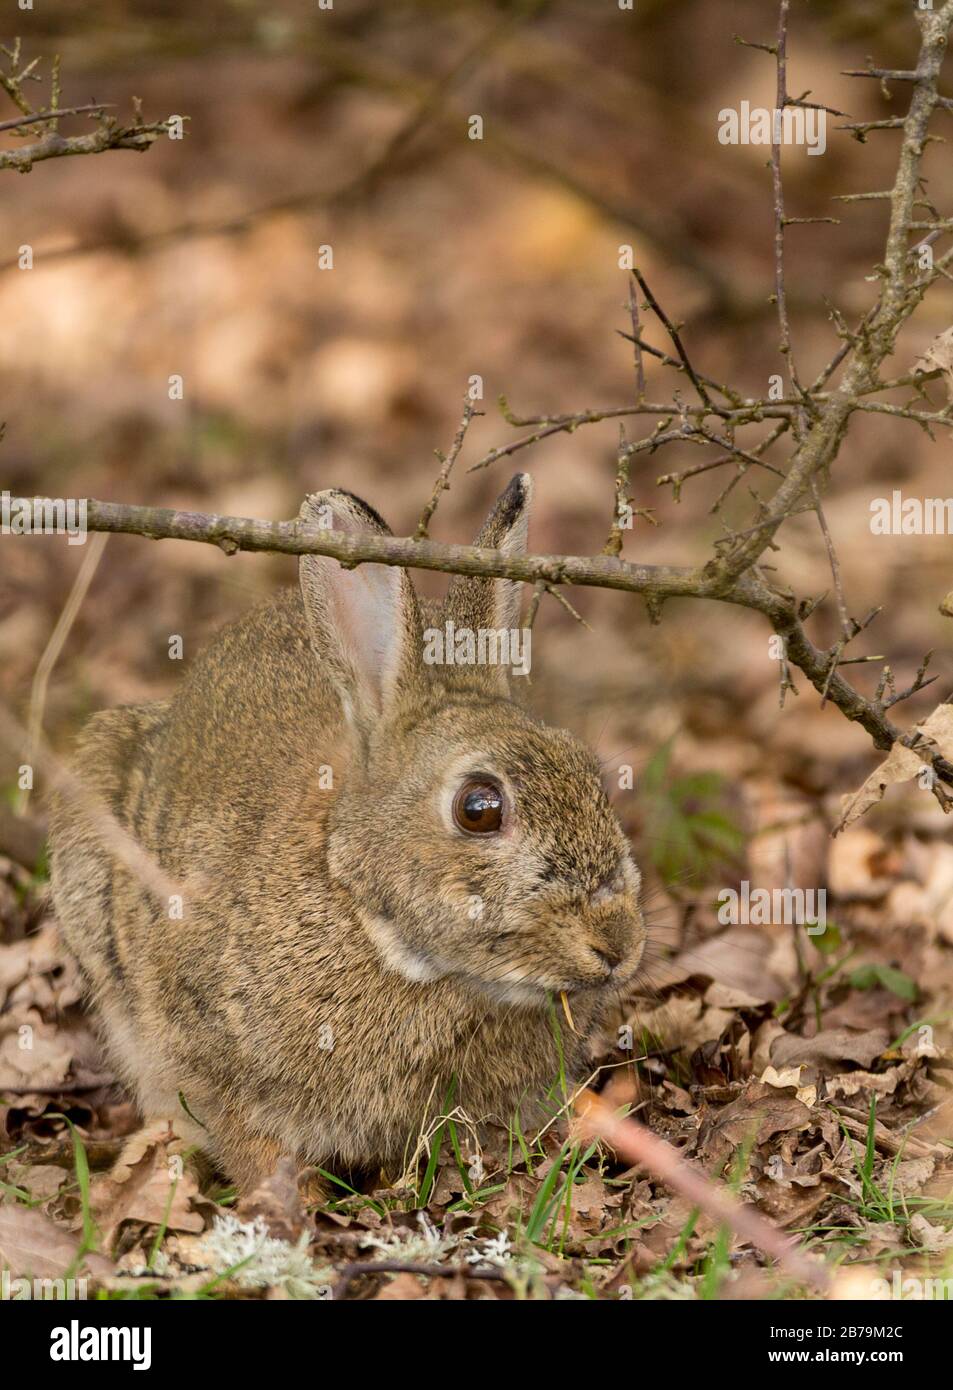 Kaninchen (Orycolagus cunniculus) führte heute häufig vorkommende Spiese ein. Braune graue Felle blasse Unterseite lange Ohren große Hinterbeine und Füße kleiner blasser Schwanz. Stockfoto